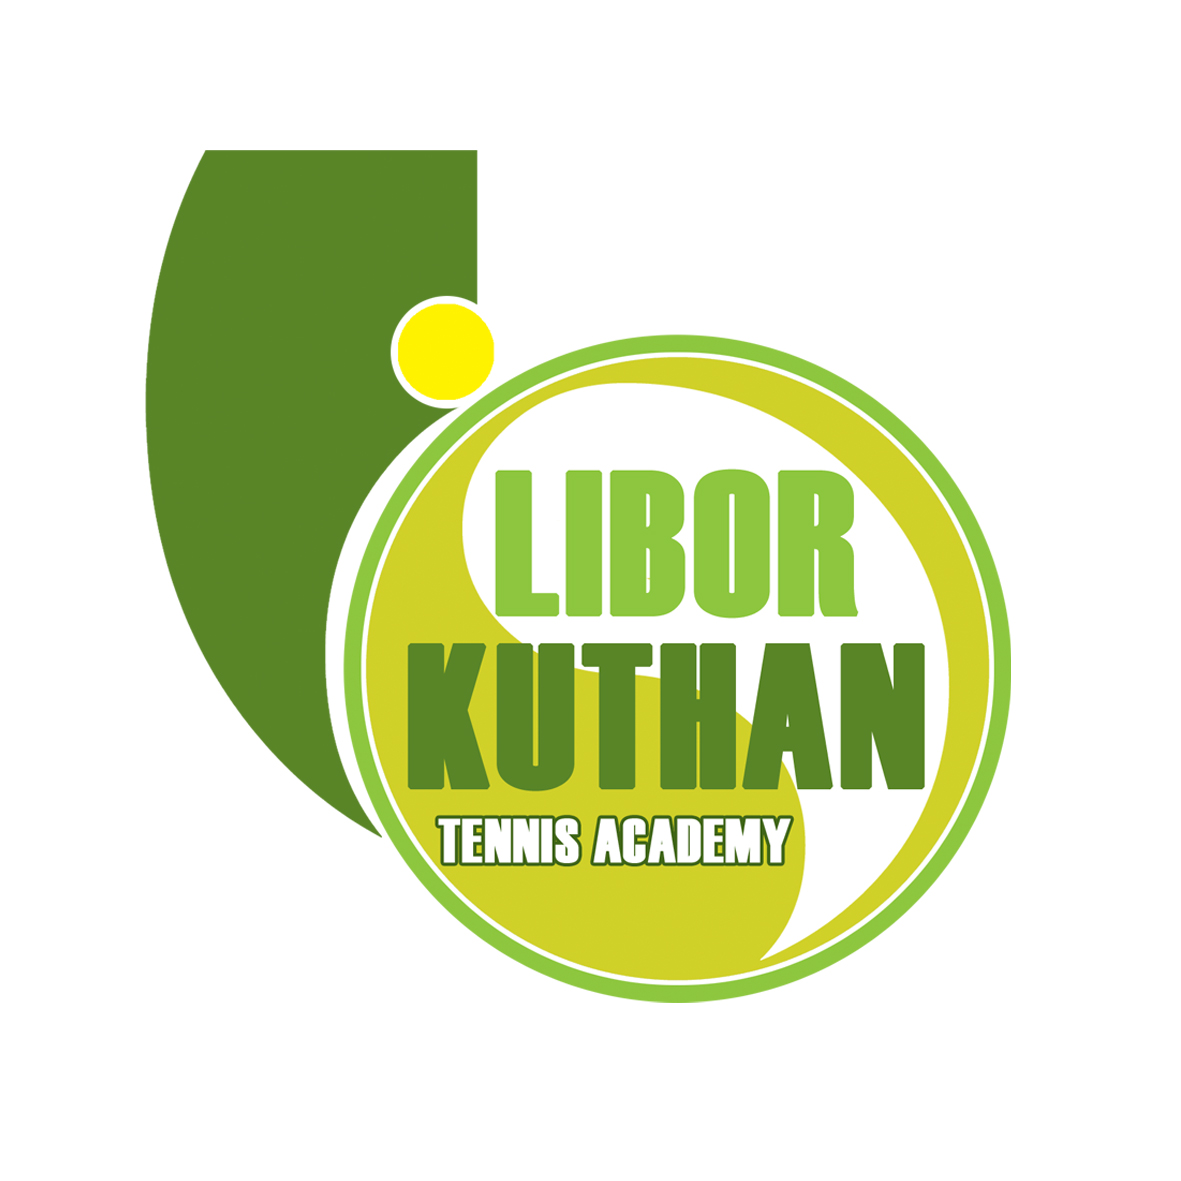 Libor Kuthan Tennis Academy